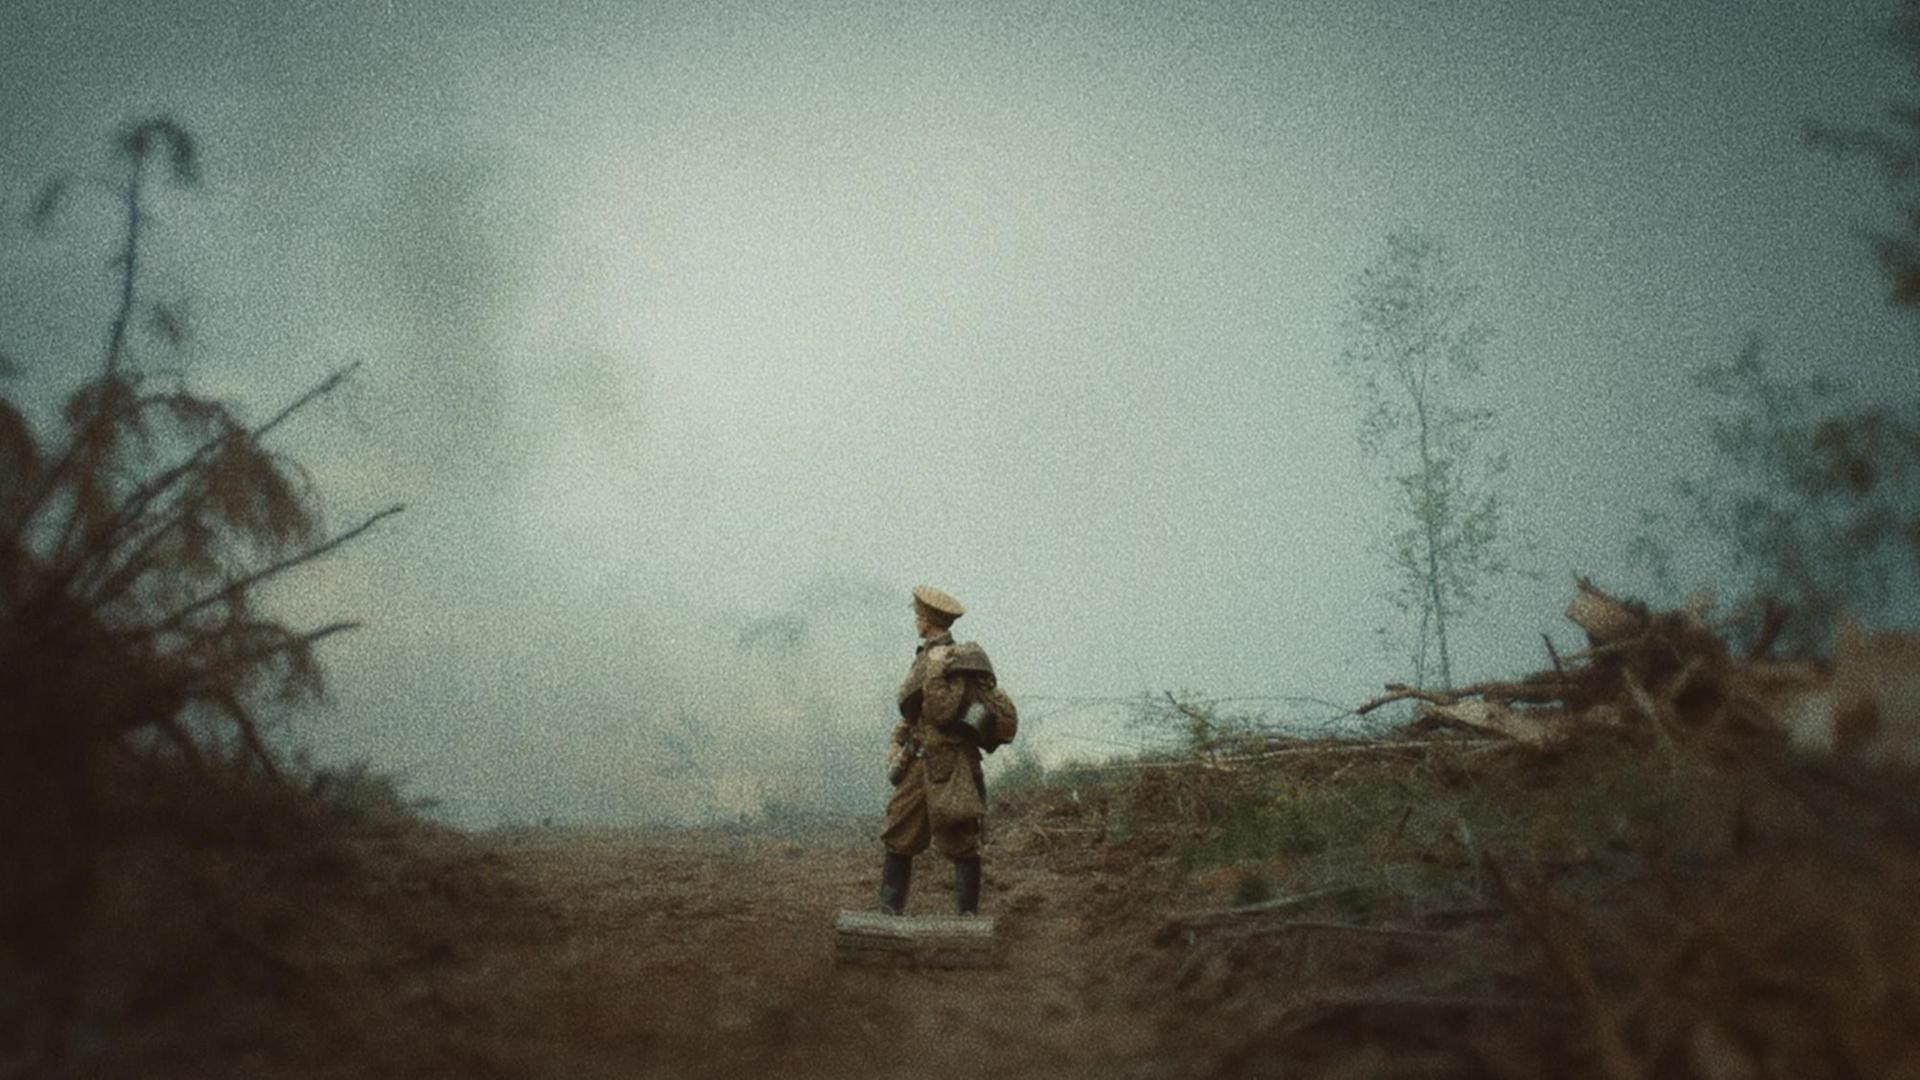 Filmszene aus "A russian youth" von Alexander Zolotukhin. Ein einsamer junger Soldat steht auf einer Waldlichtung im Nebel.